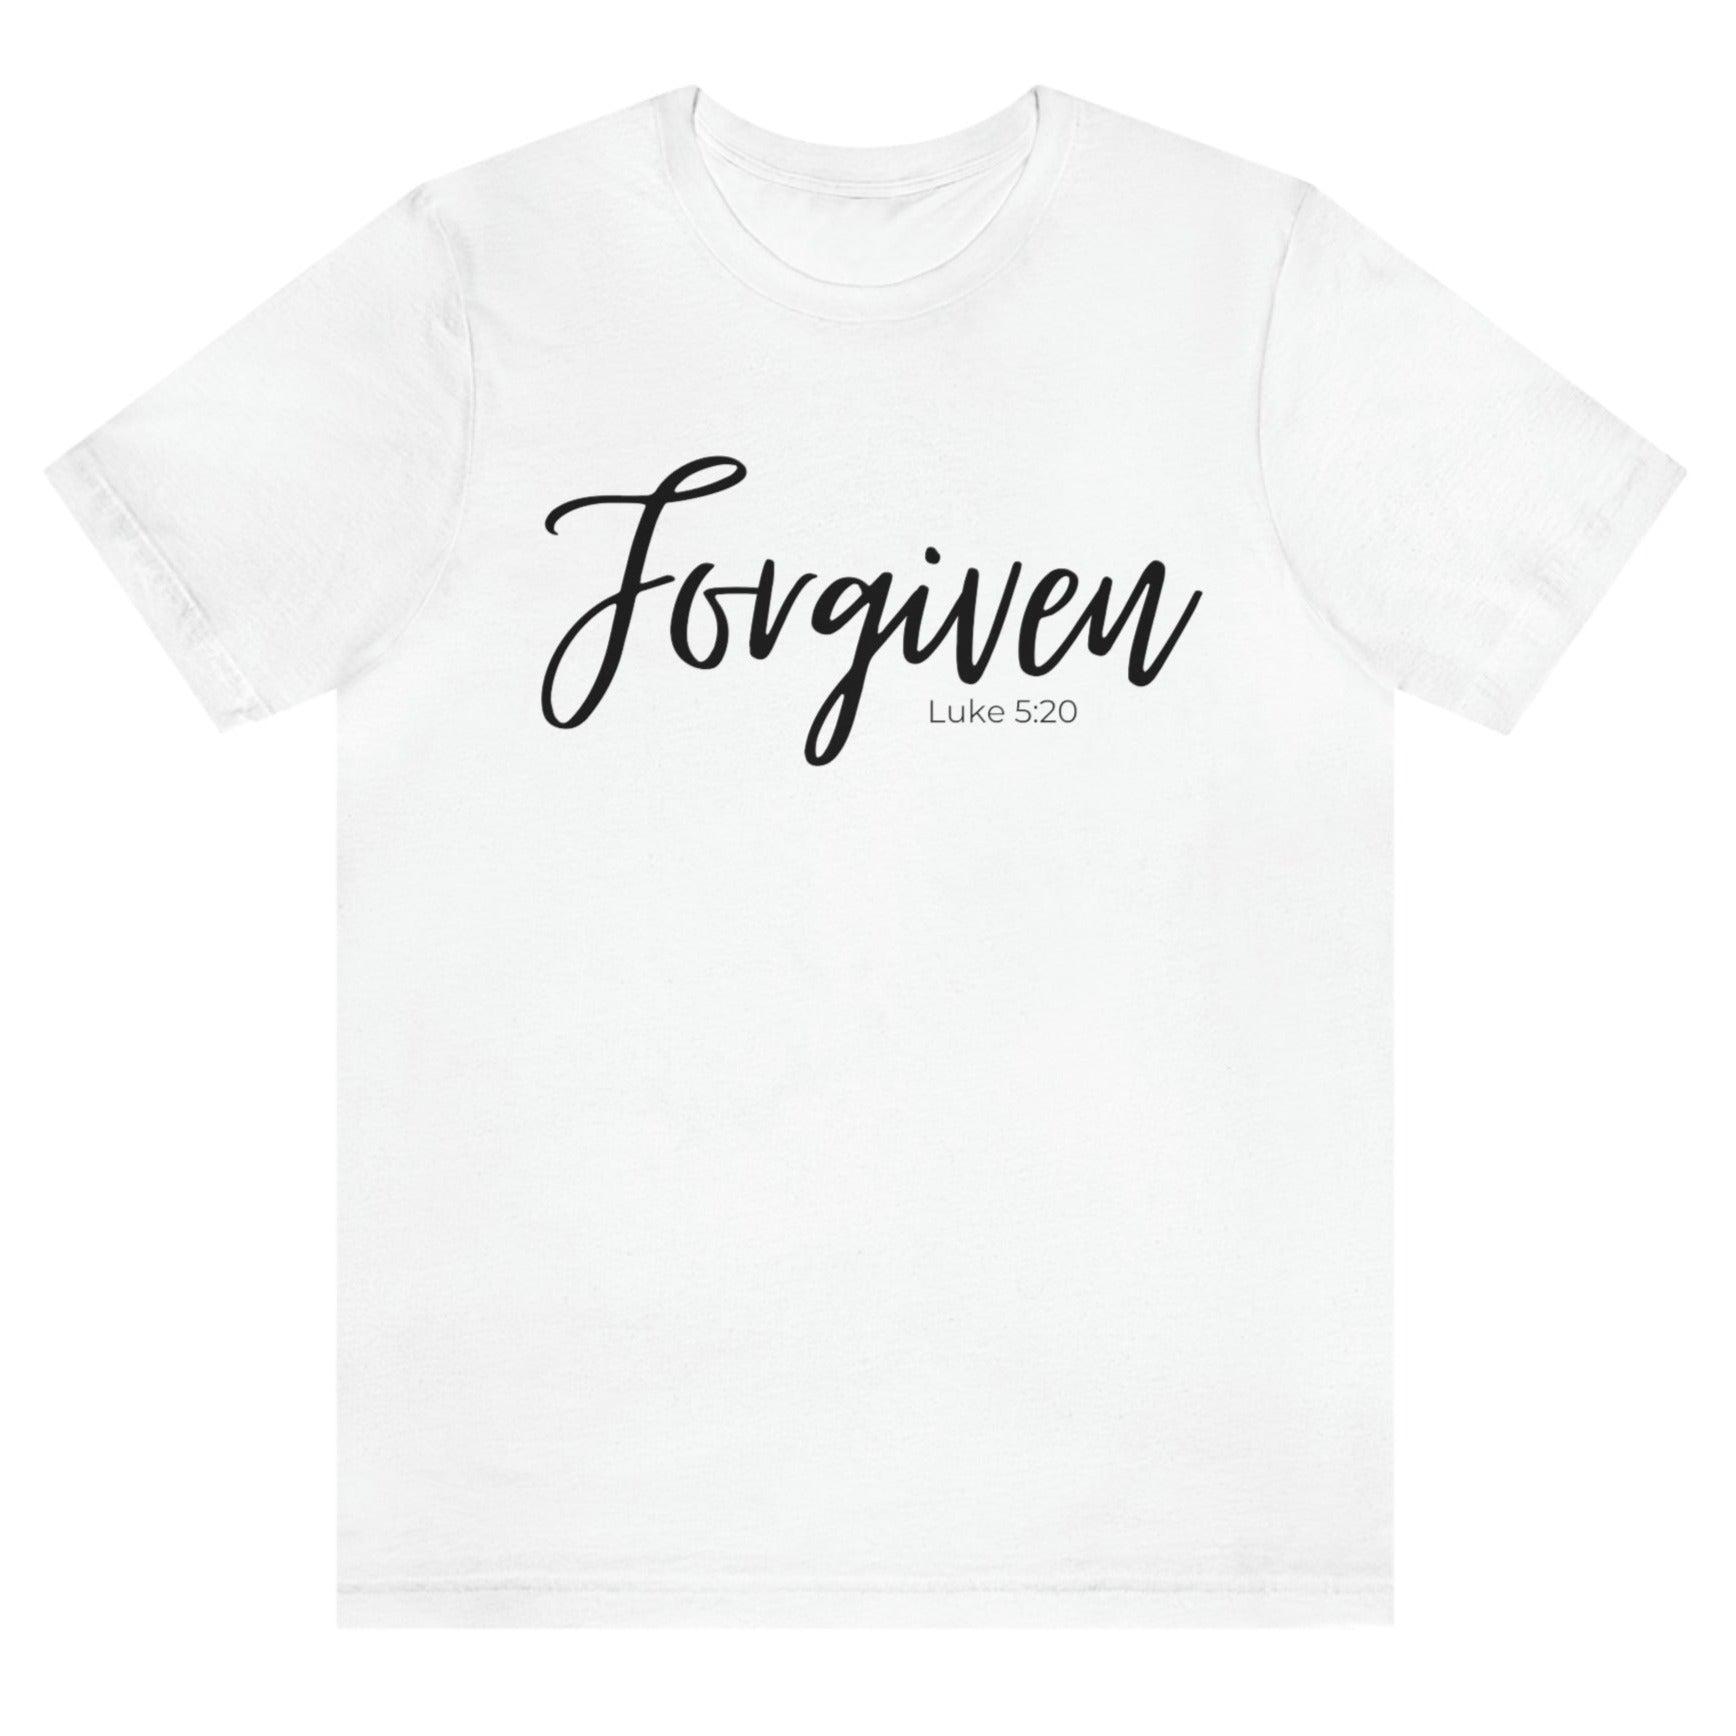 forgiven-luke-5-20-white-t-shirt-unisex-inspiring-christian